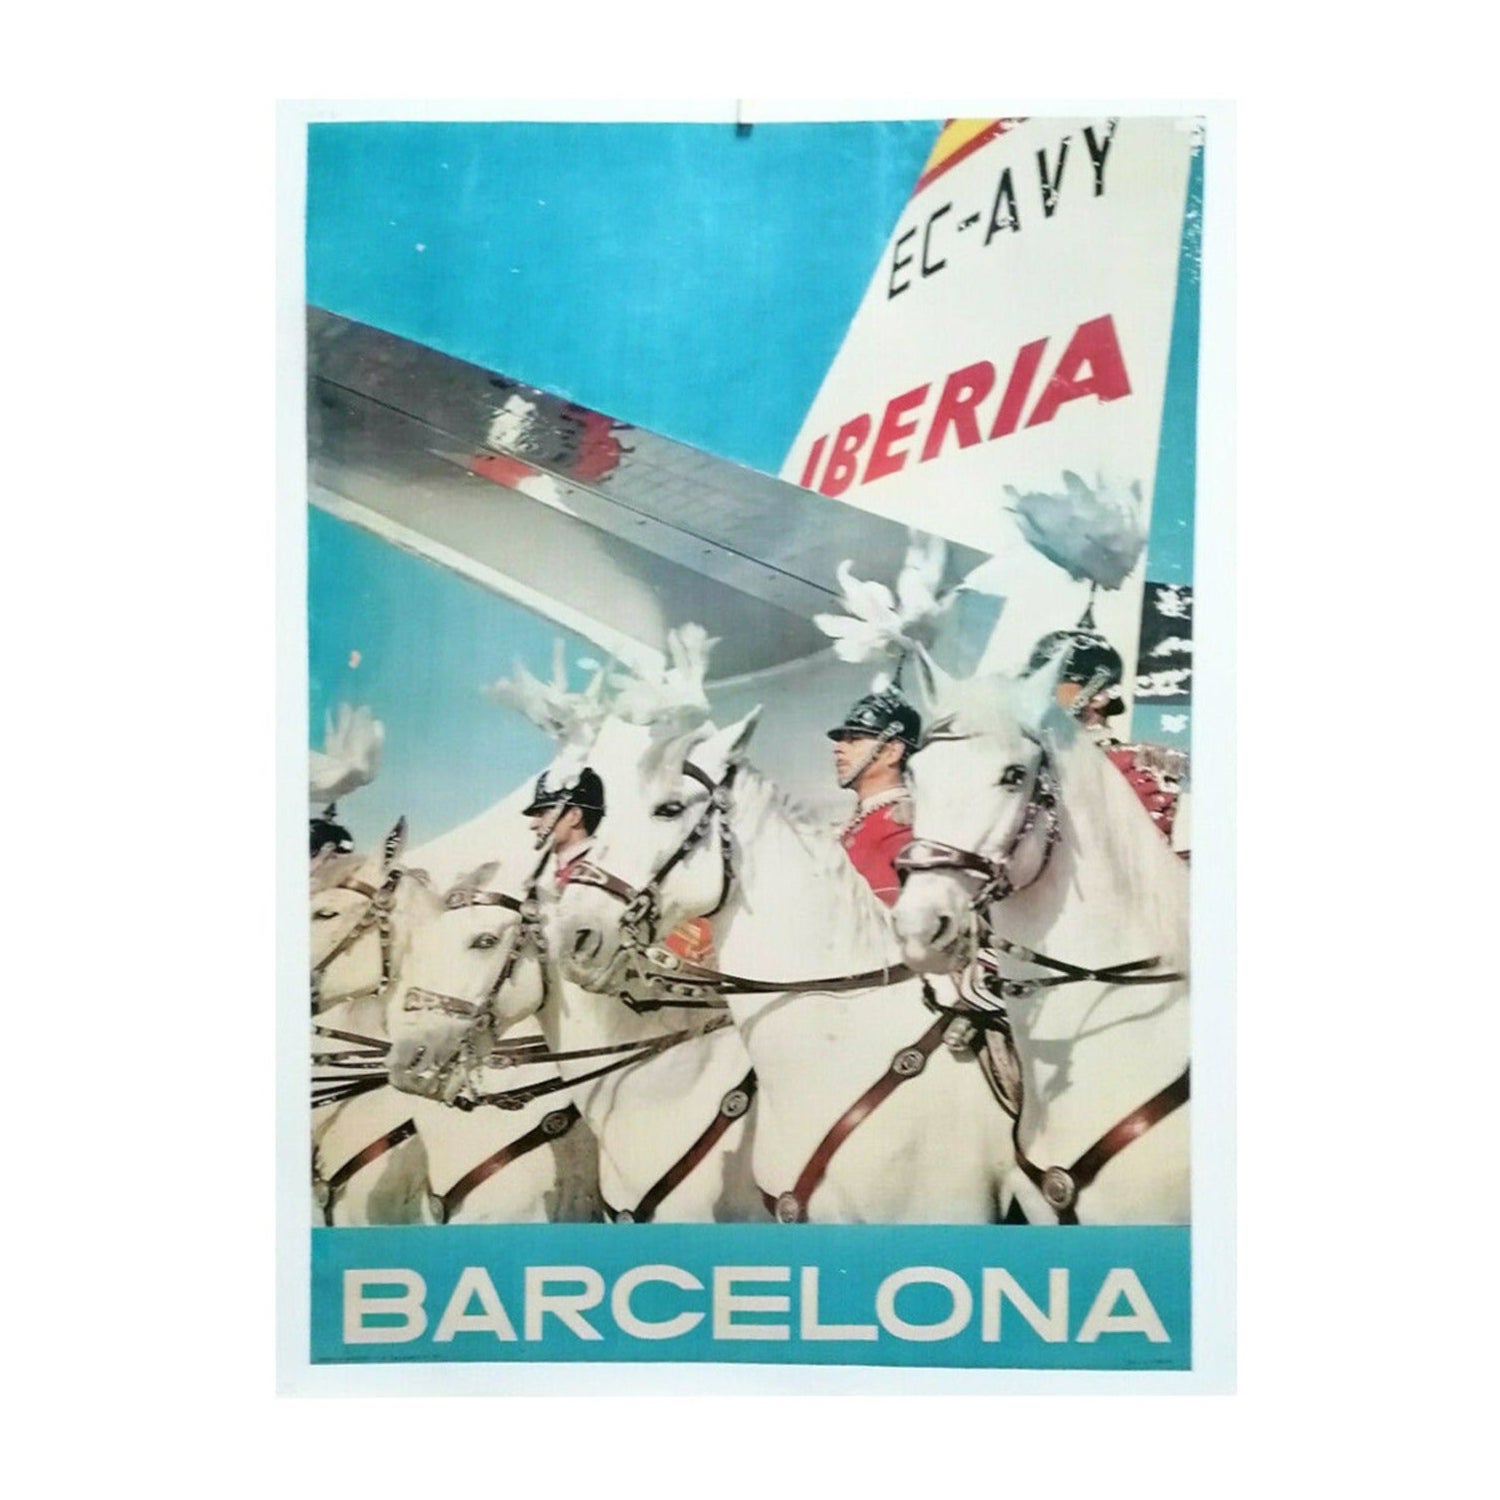 1955 Iberia - Barcelona Original Vintage Poster For Sale